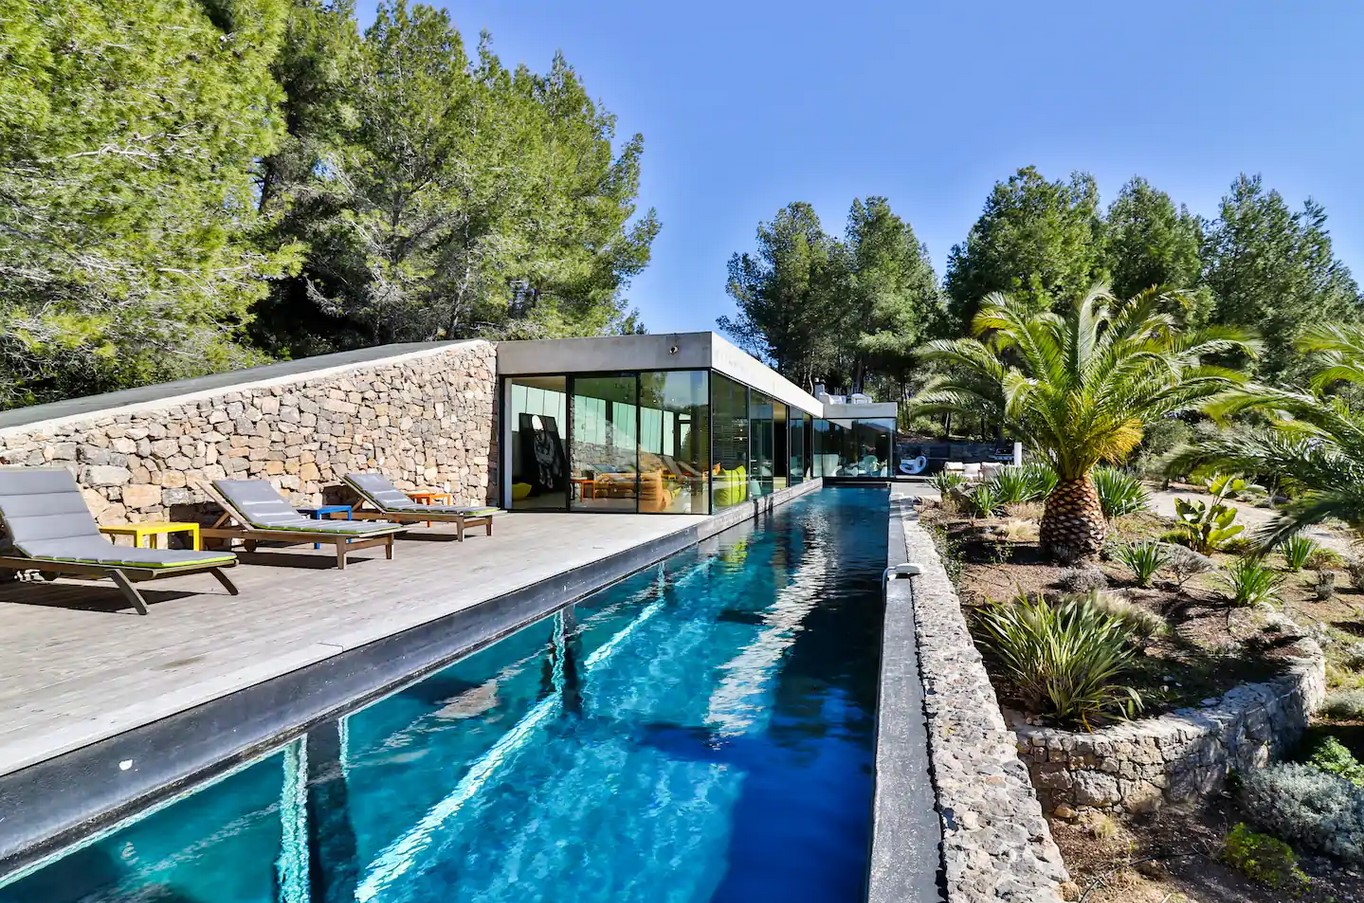 Location Villa ON THE ROCKS avec piscine privée à Bandol dans le Var